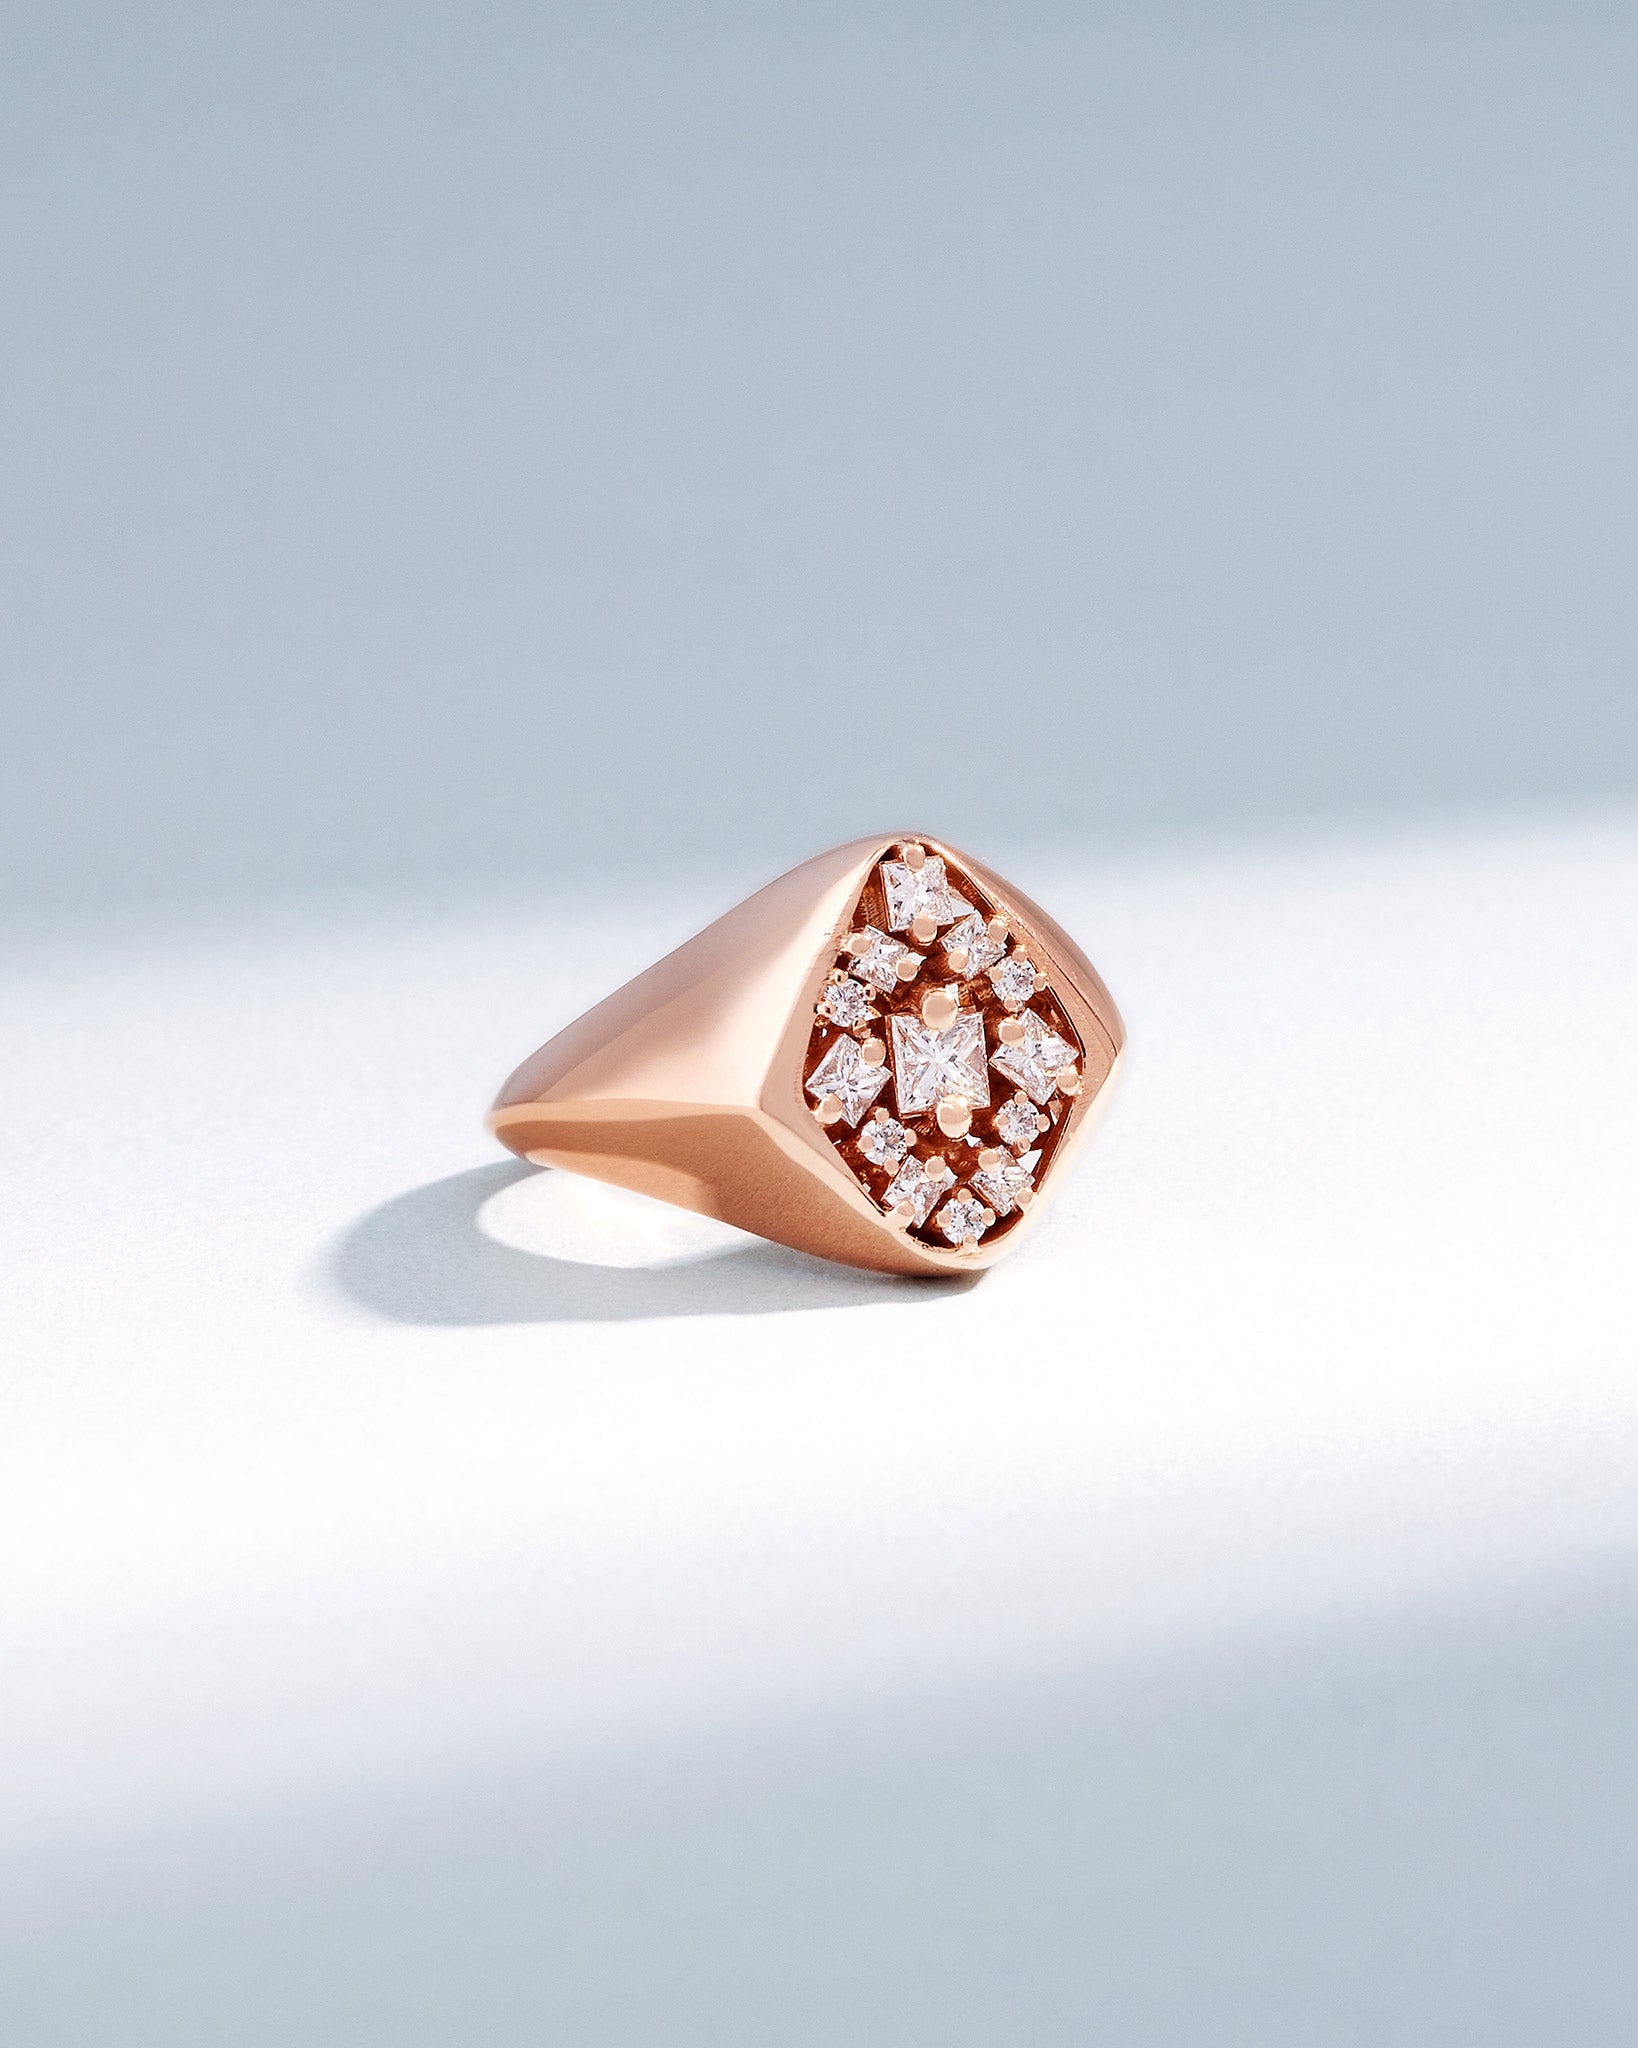 Suzanne Kalan La Fantaisie Star Diamond Signet Ring in 18k rose gold